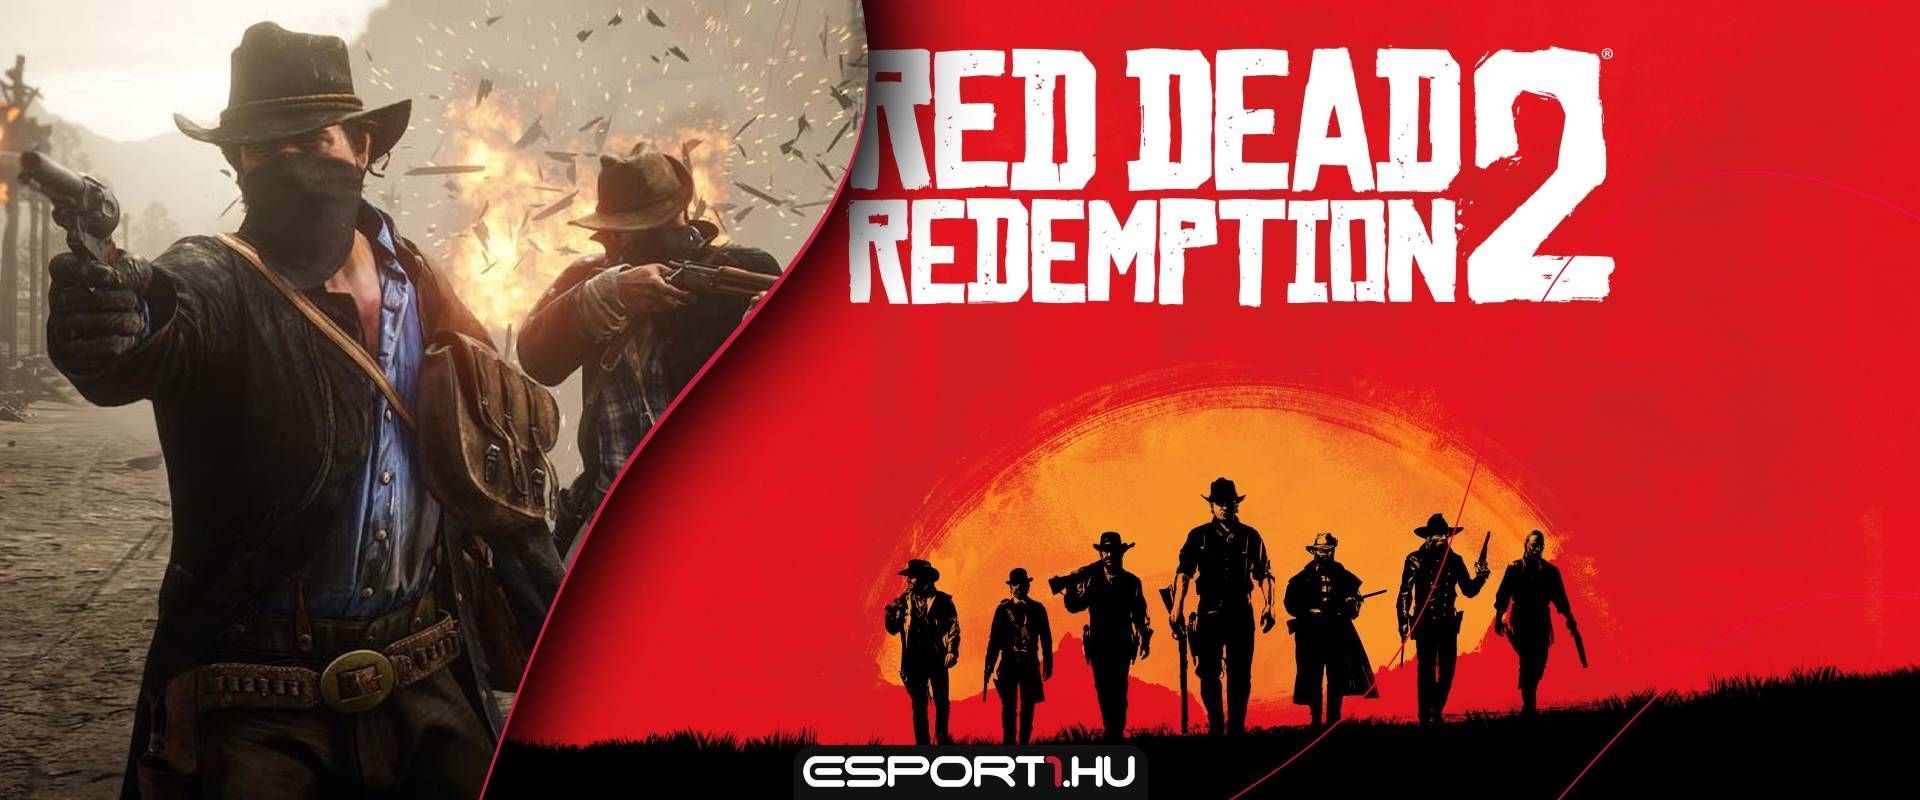 Pár nap és egy gyros tál áráért szerezhetjük majd meg a Red Dead Redemption 2 Online részét